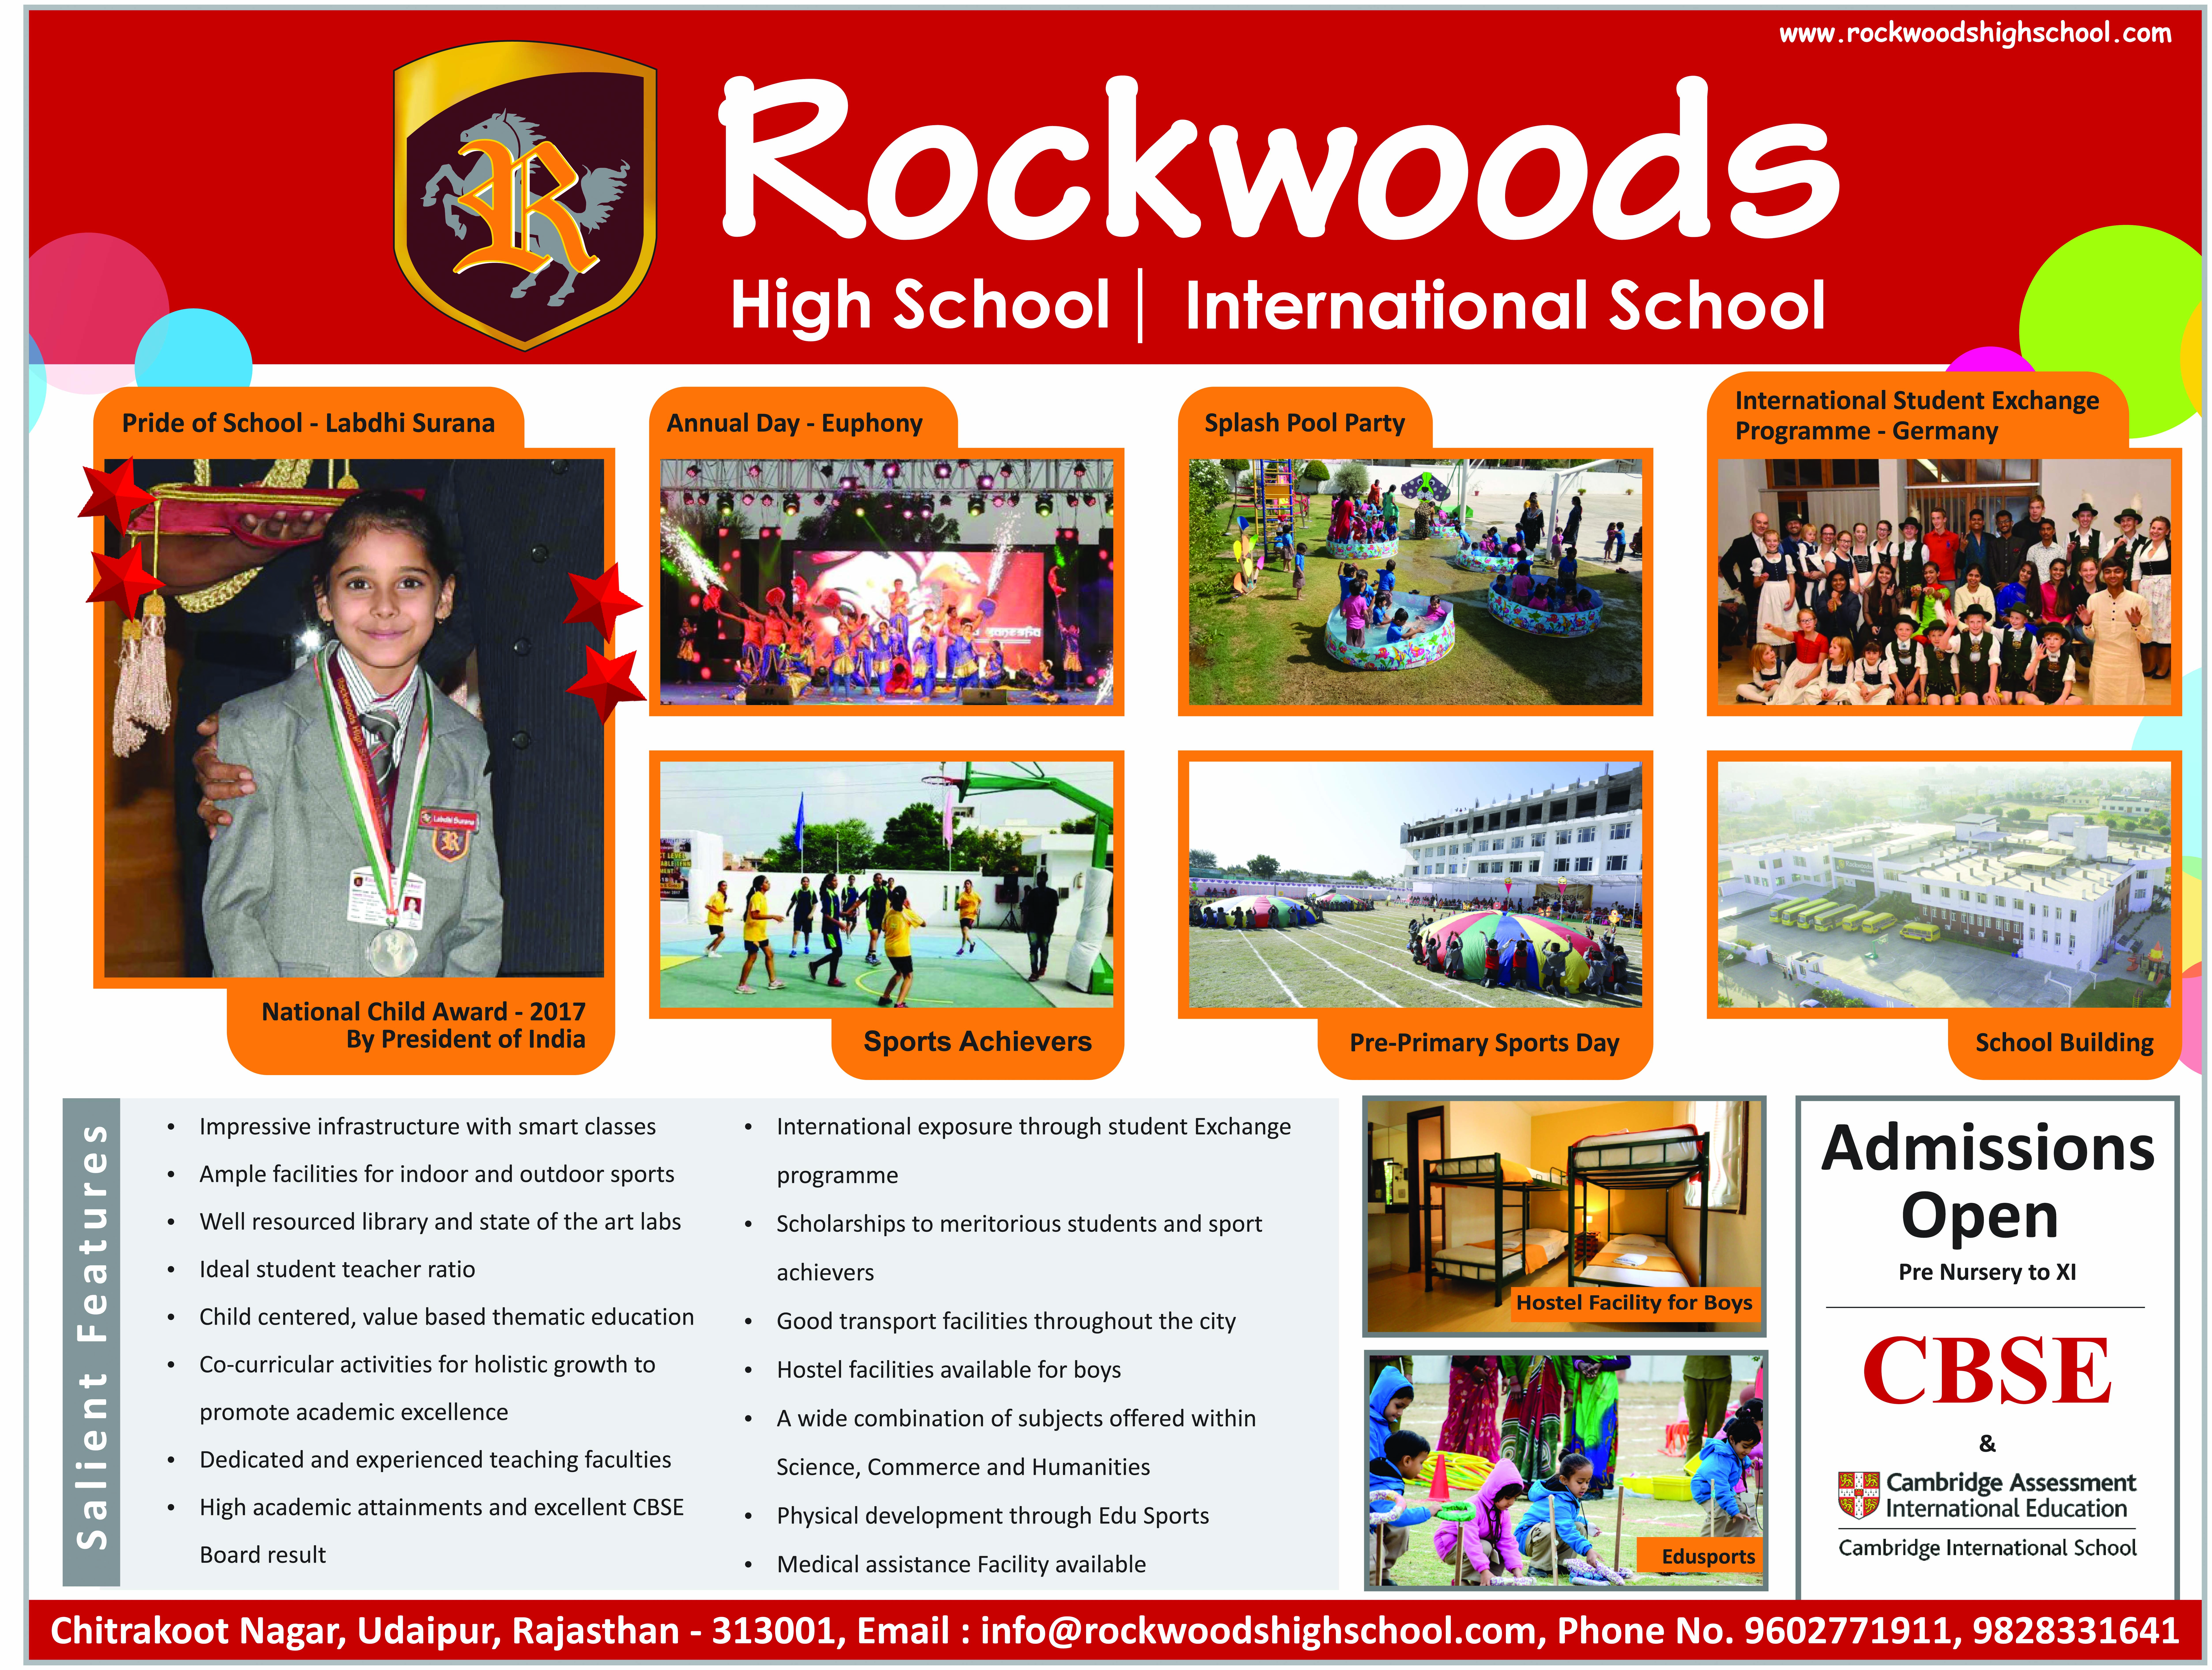 Rockwoods High School